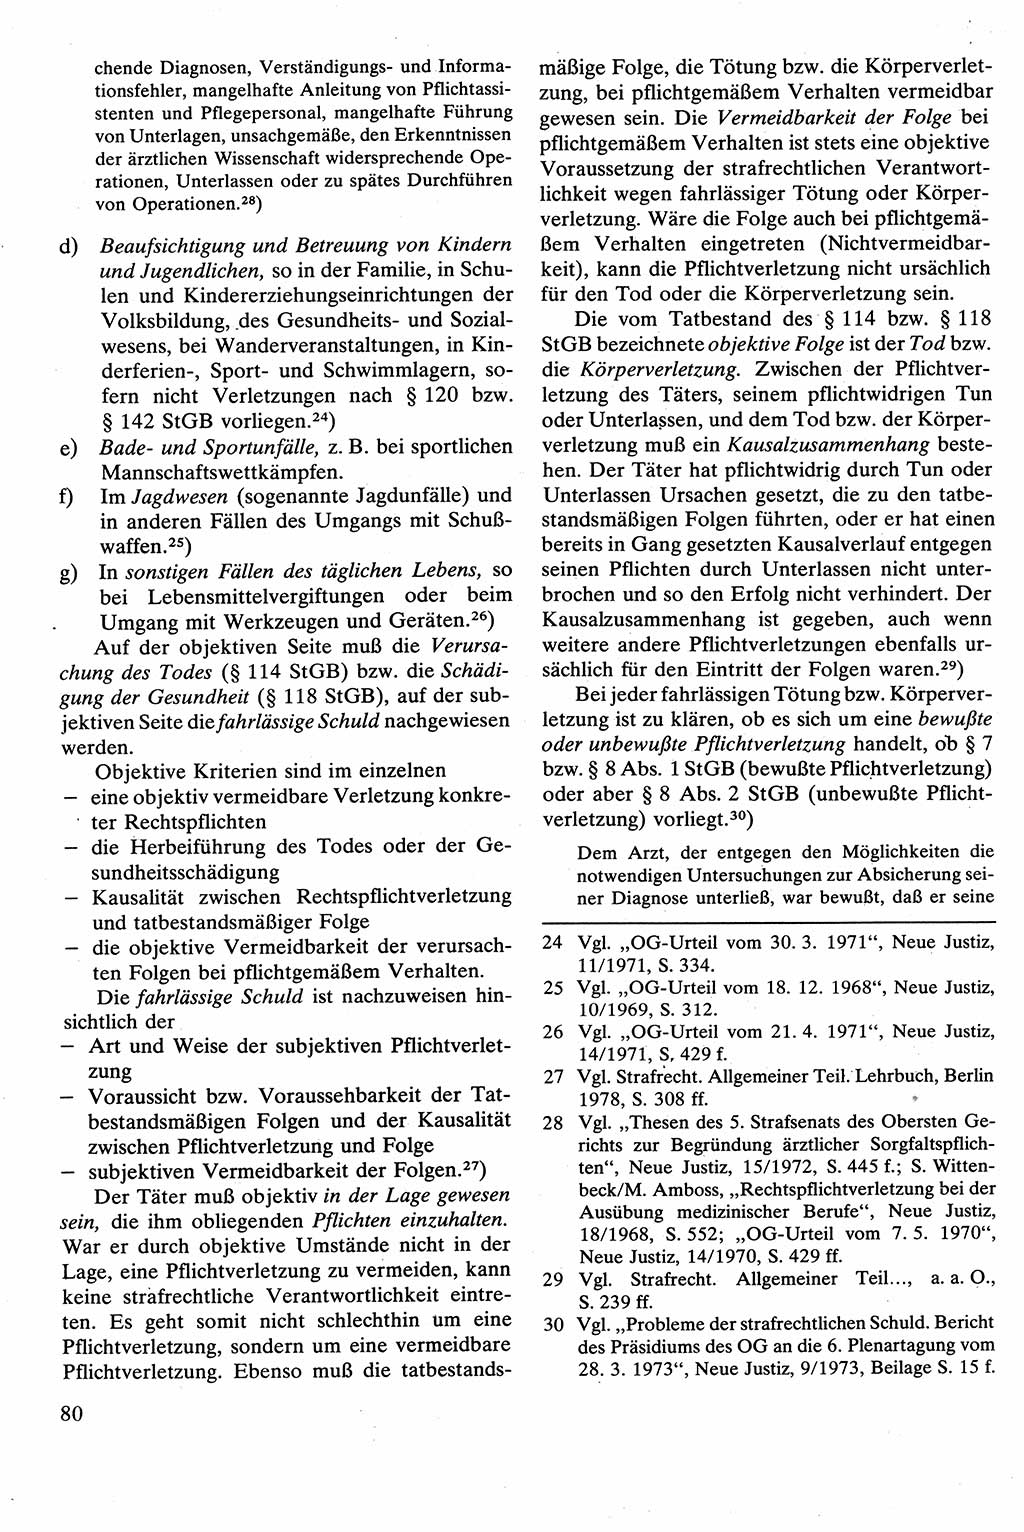 Strafrecht [Deutsche Demokratische Republik (DDR)], Besonderer Teil, Lehrbuch 1981, Seite 80 (Strafr. DDR BT Lb. 1981, S. 80)